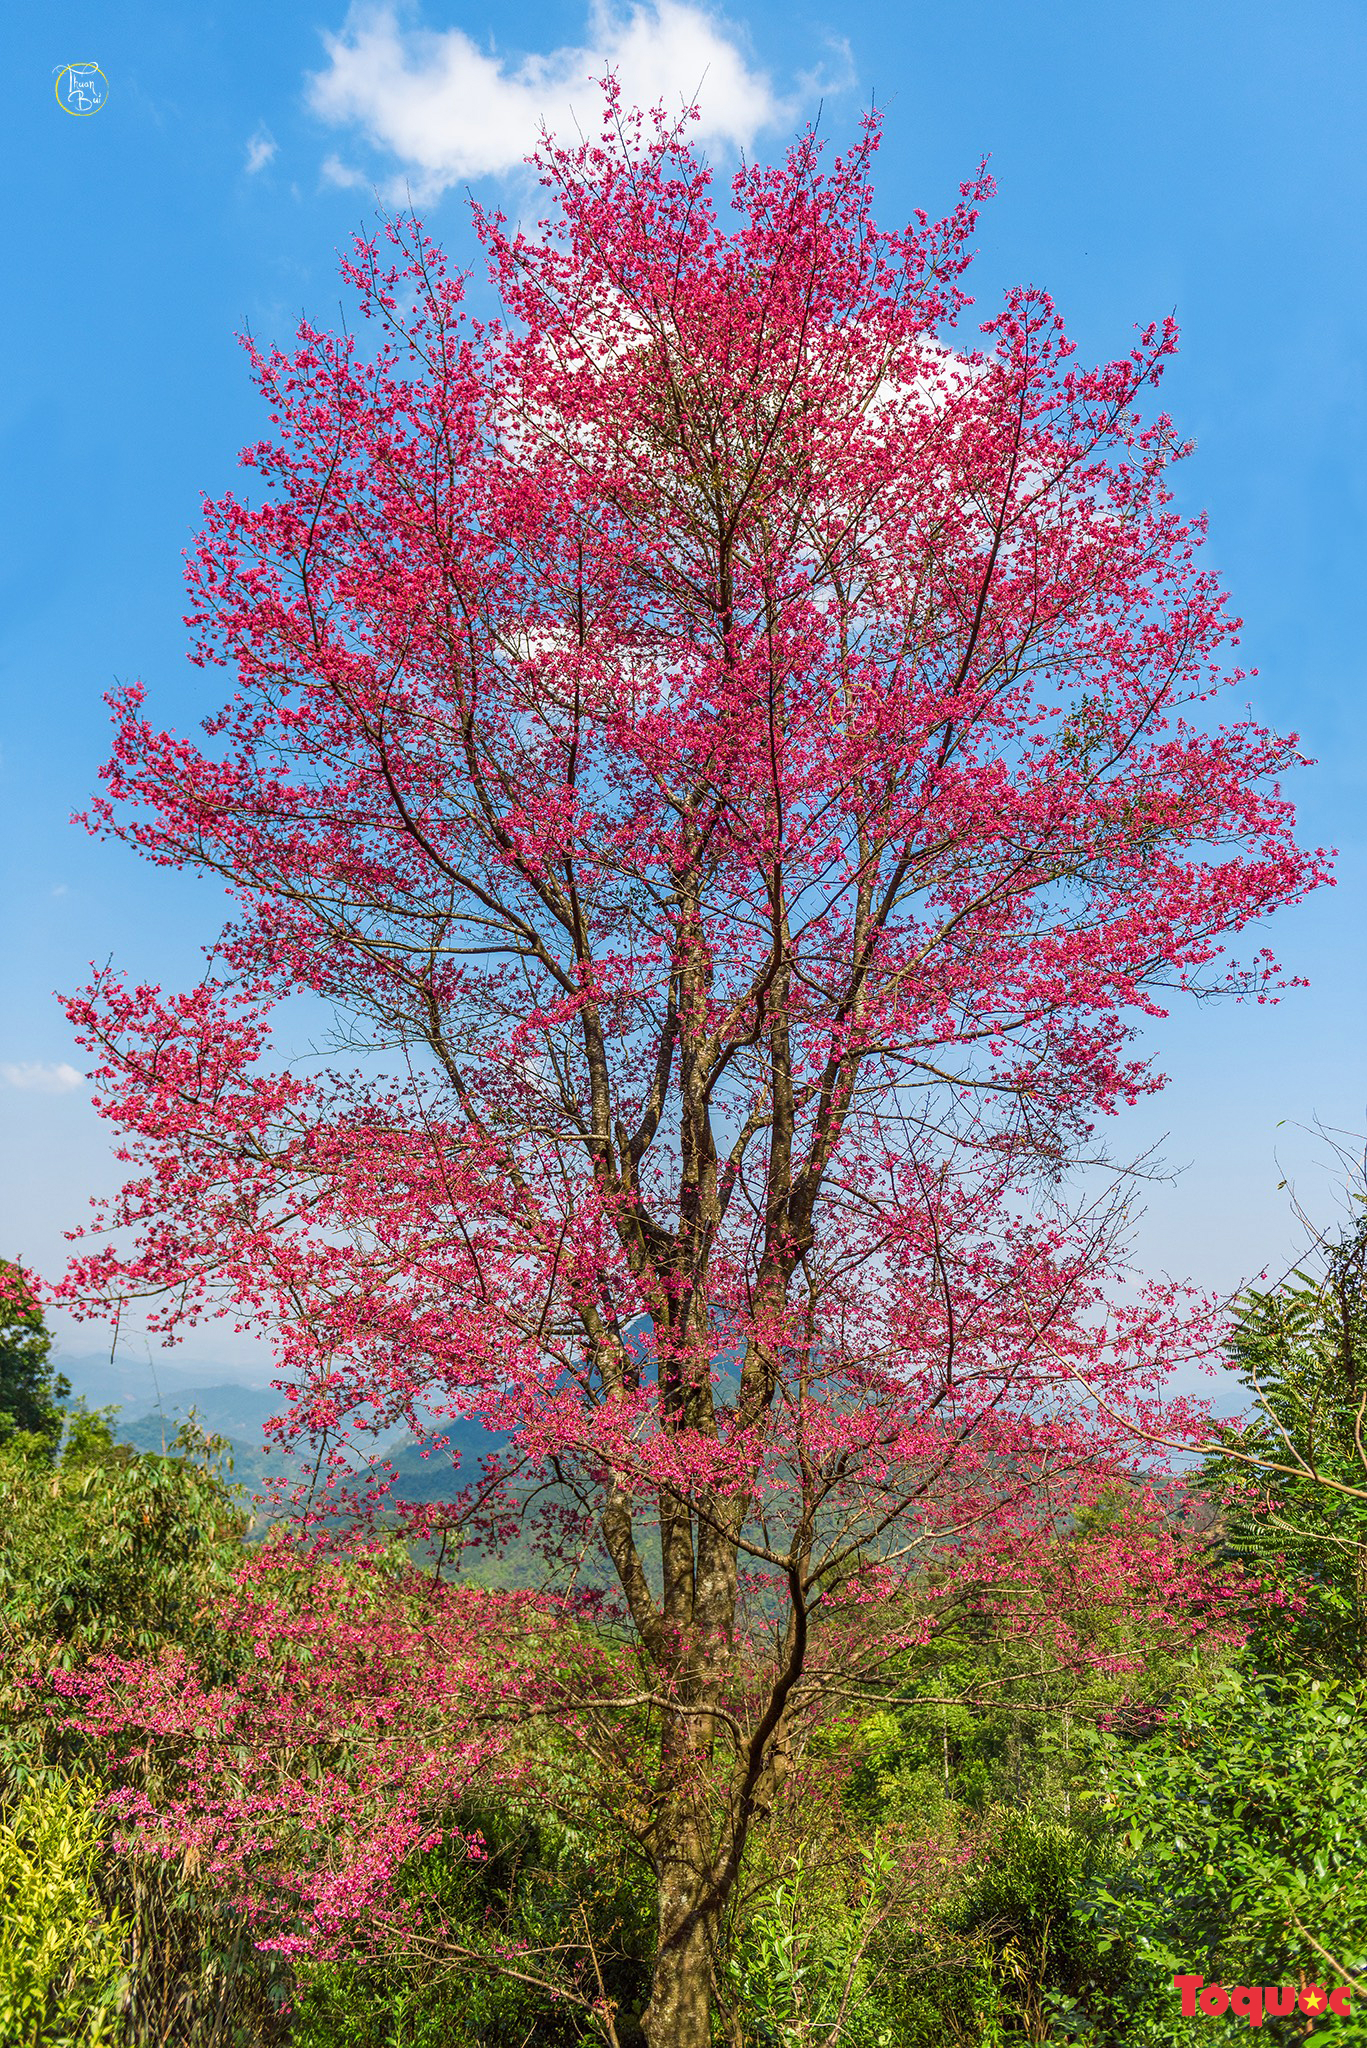 Chiêm ngưỡng loài hoa đào chuông quý hiếm trên đỉnh Mẫu Sơn - Ảnh 2.